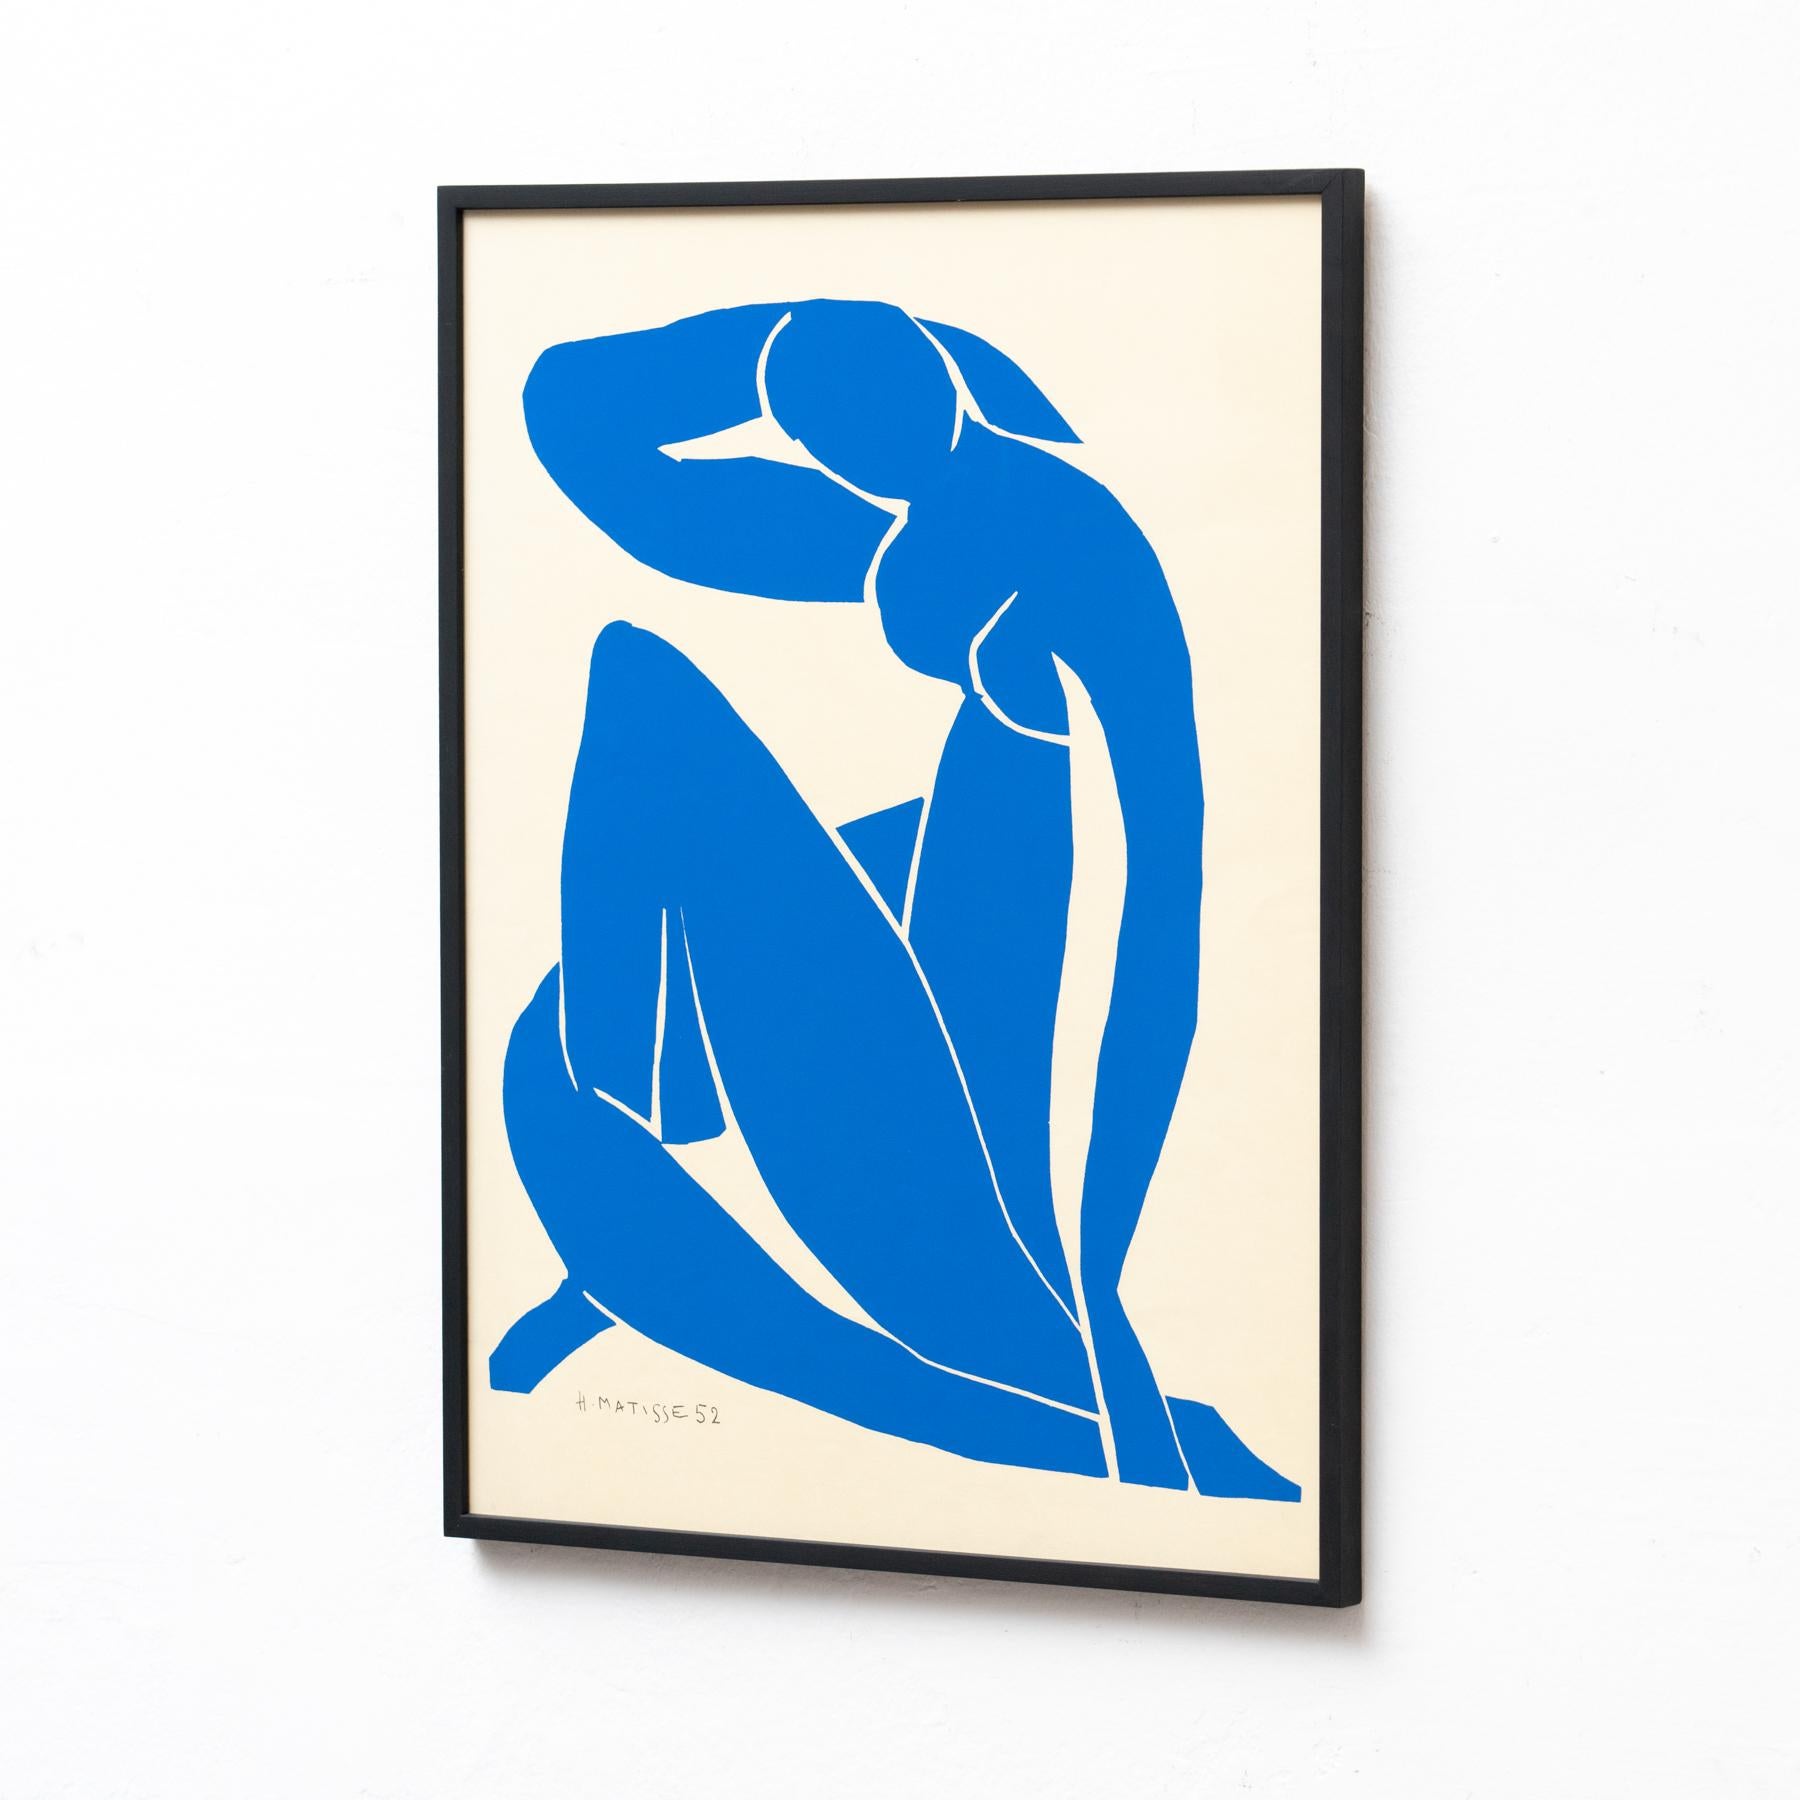 Framed After Henri Matisse Cut Out Blue Lithograph Nu Bleu II 1